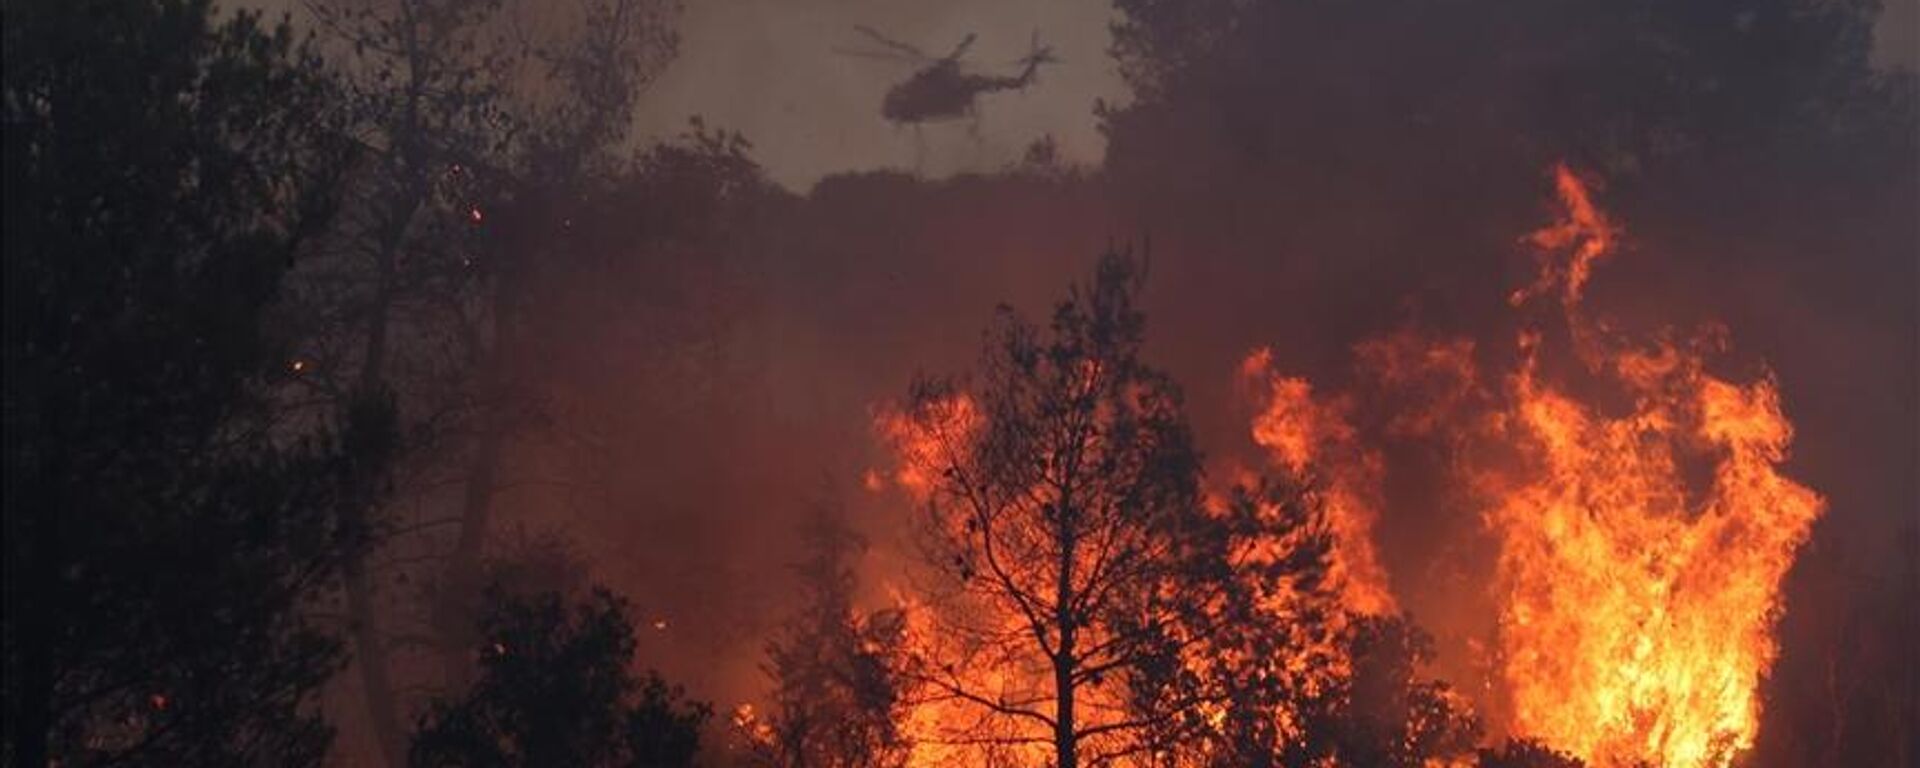 Rodos Adası'nda bir hafta önce başlayan orman yangını kontrolsüz şekilde yayılmaya devam ederken, Yunanistan'ın Korfu Adası'nda da orman yangını çıktığı bildirildi. - Sputnik Türkiye, 1920, 31.07.2023